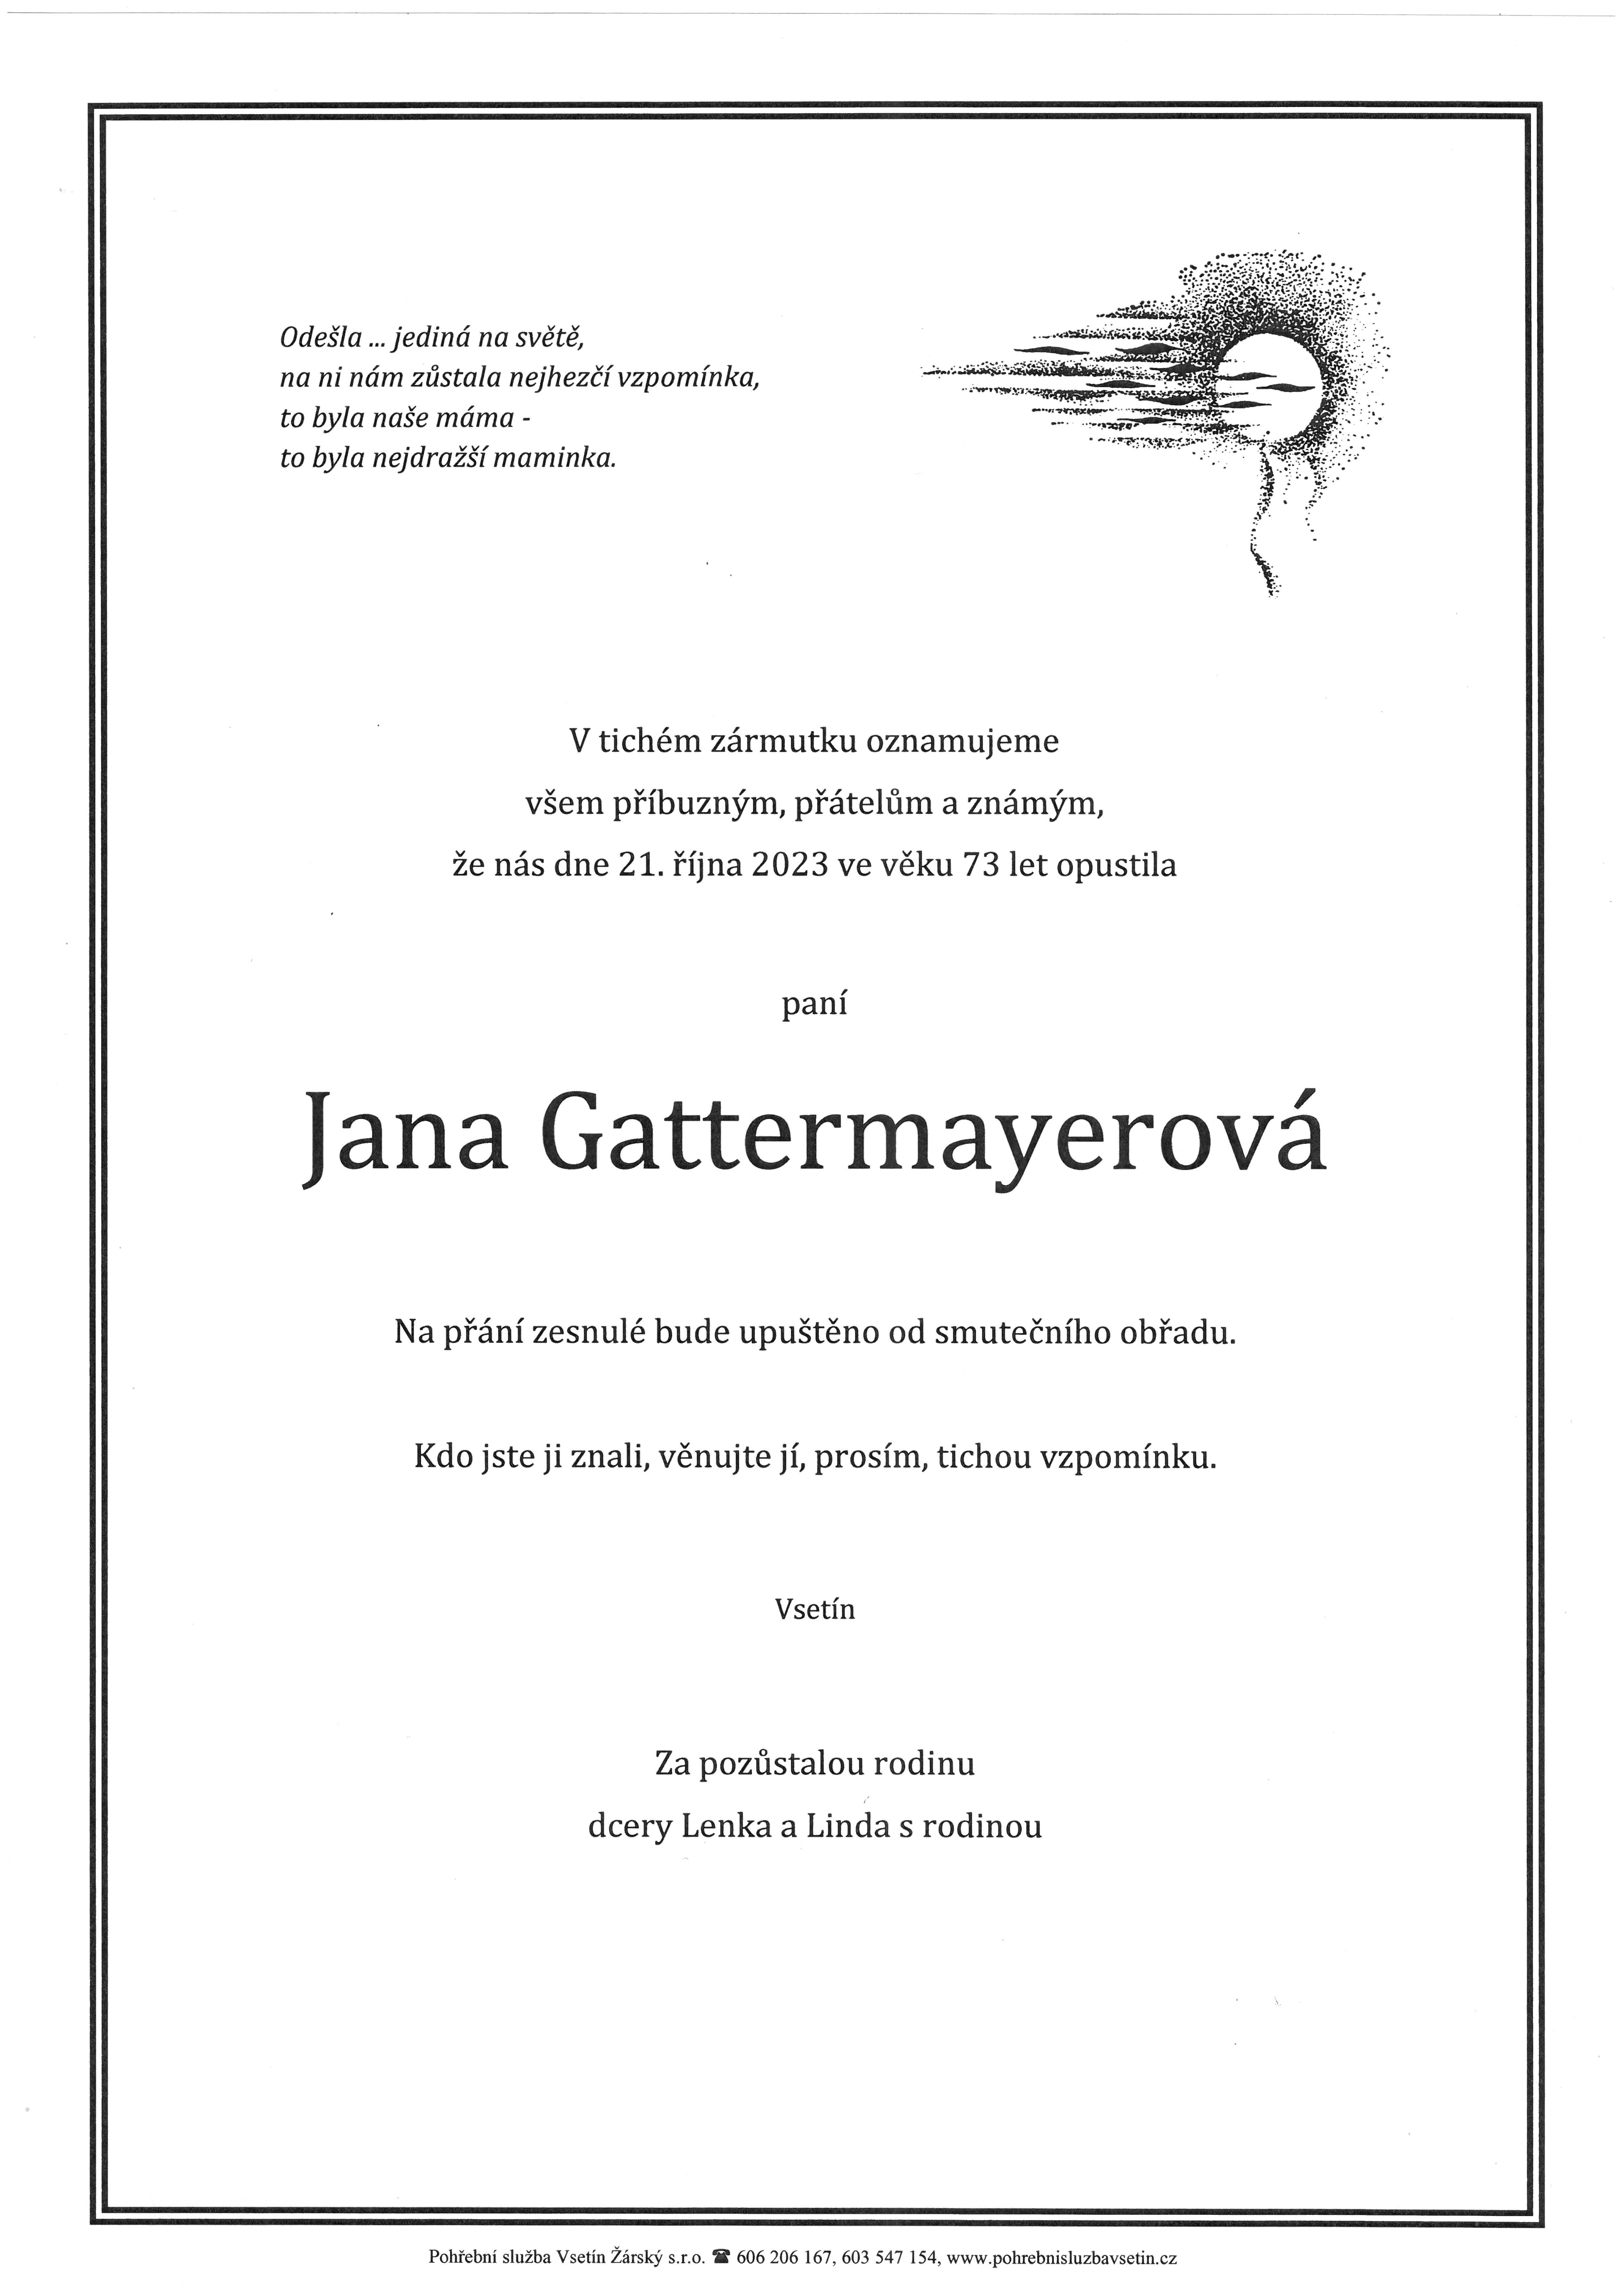 Jana Gattermayerová